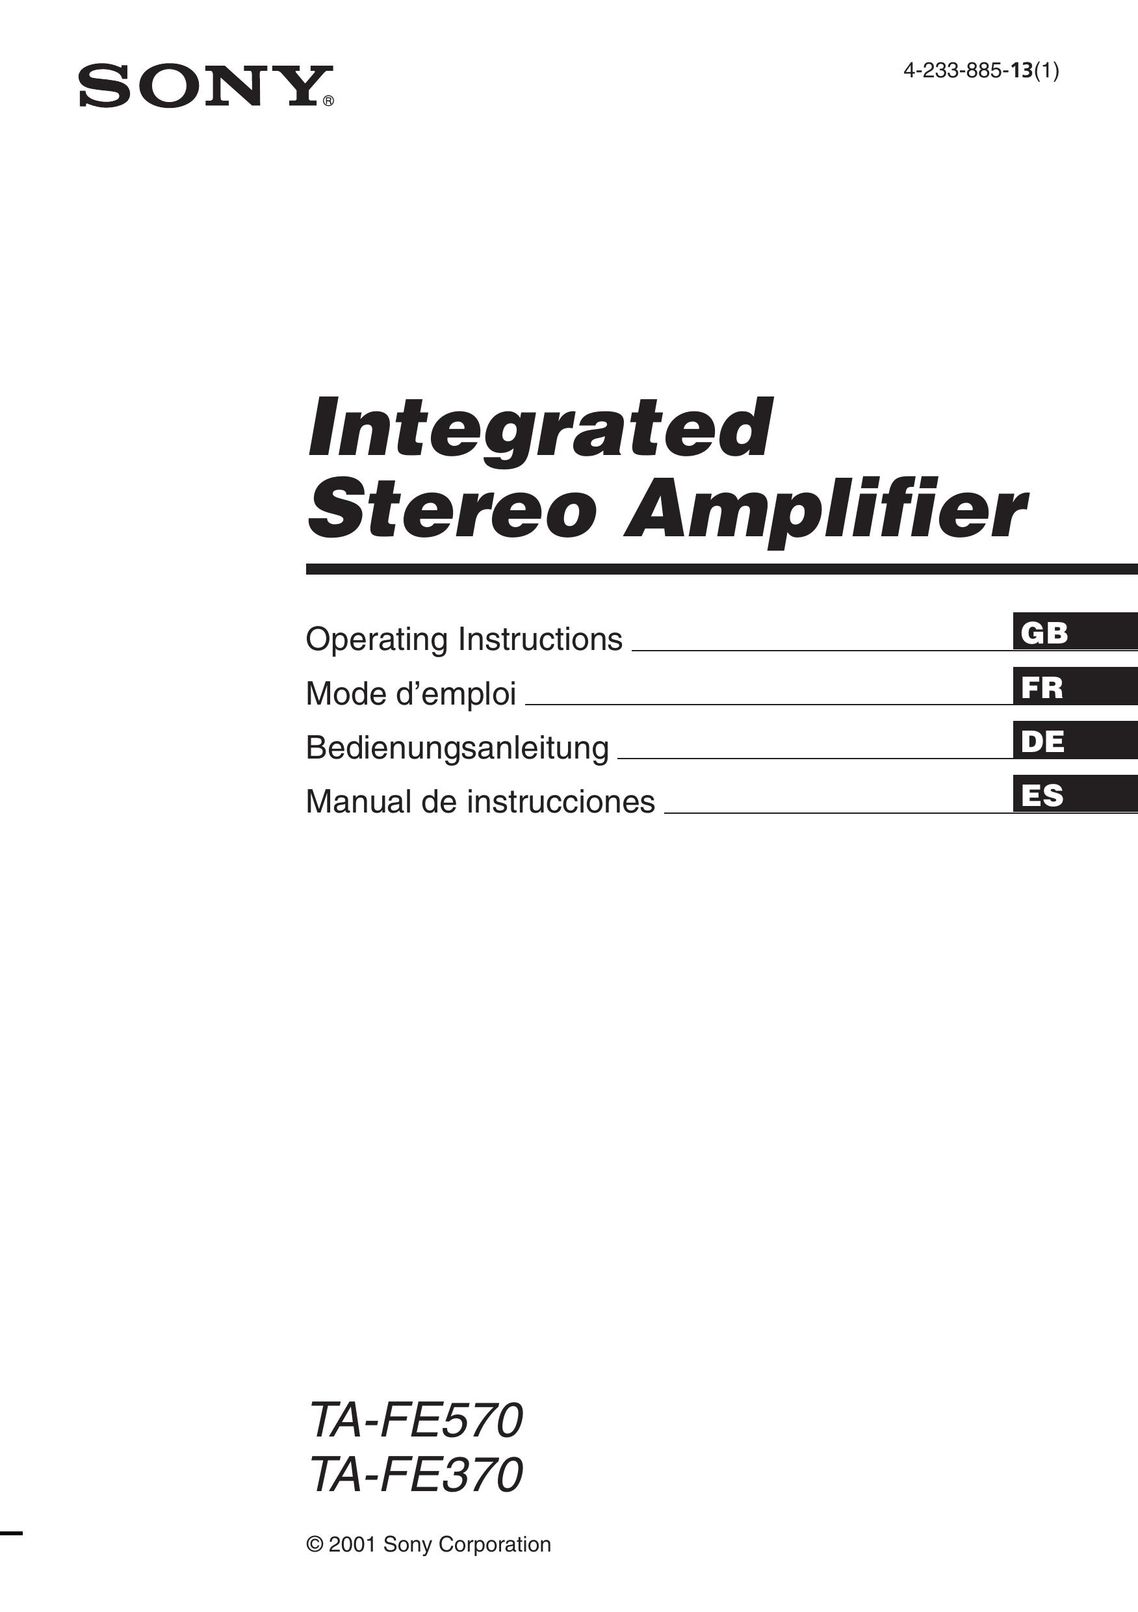 Sony TA-FE370 Stereo Amplifier User Manual